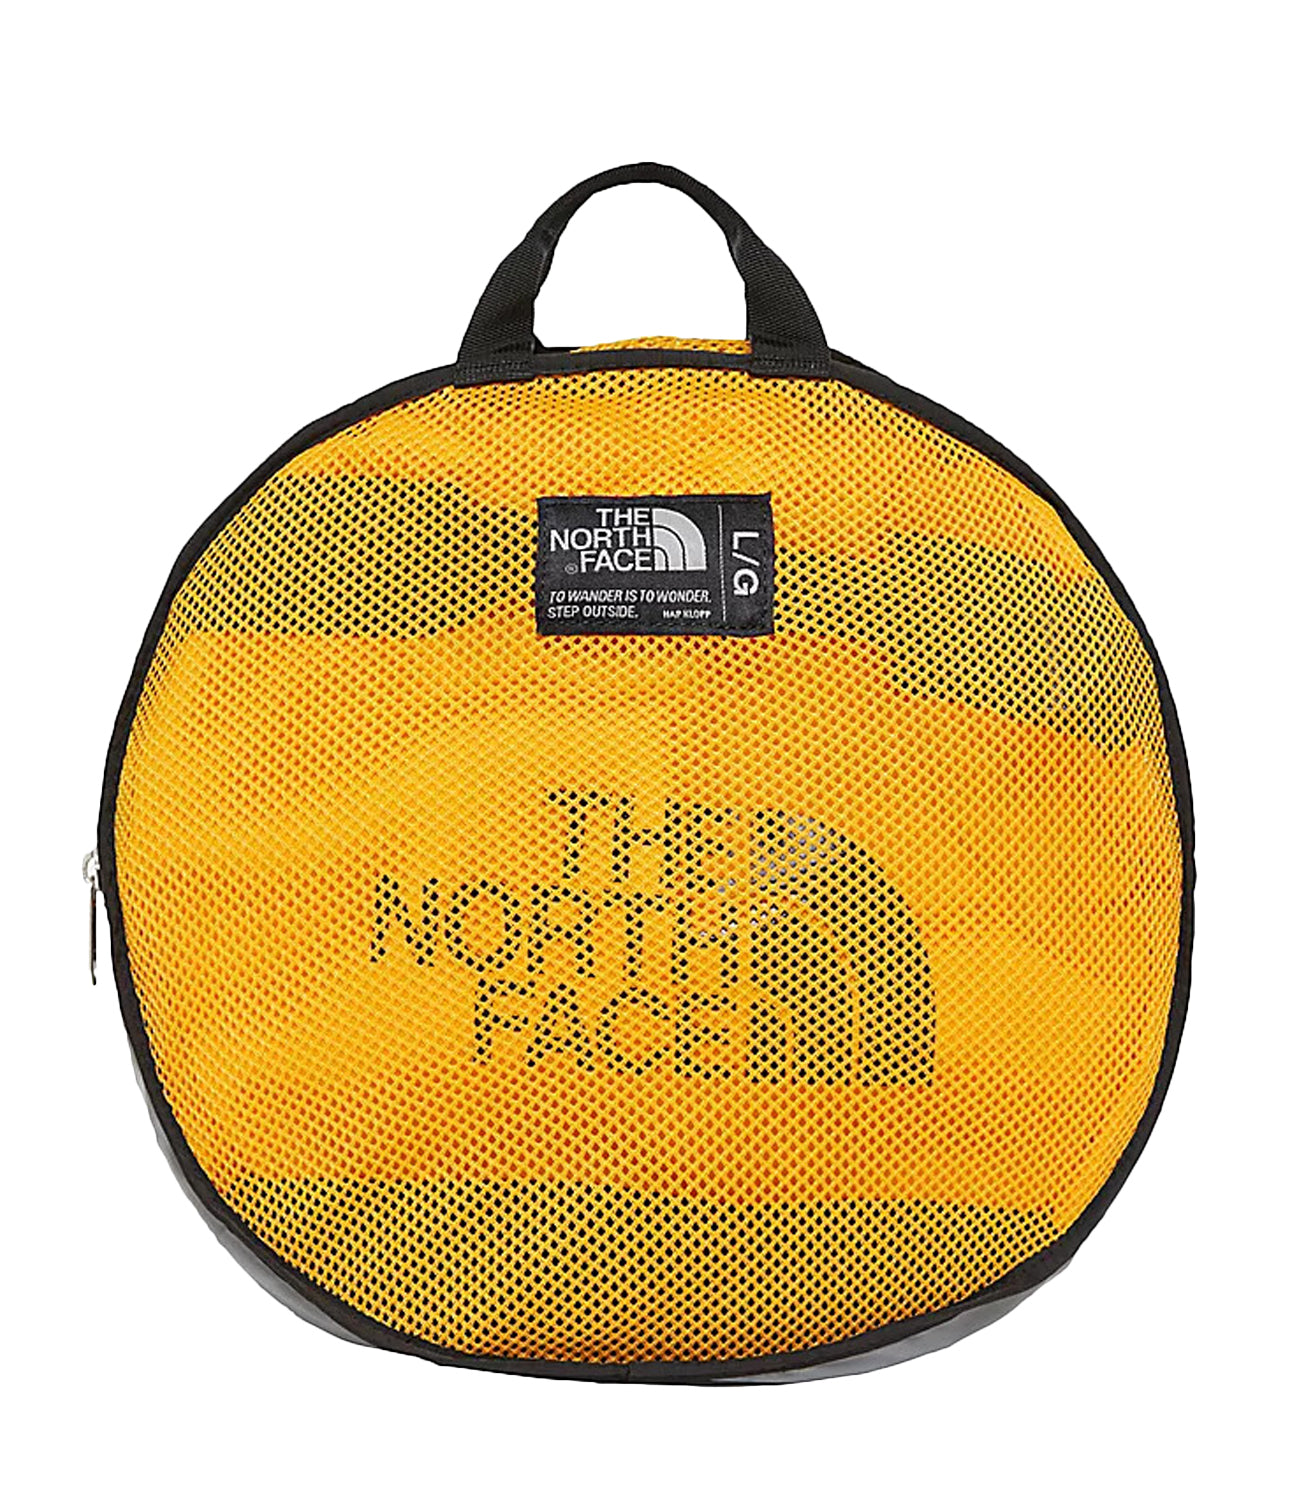 The North Face | Borsa Da Viaggio Gialla e Nera